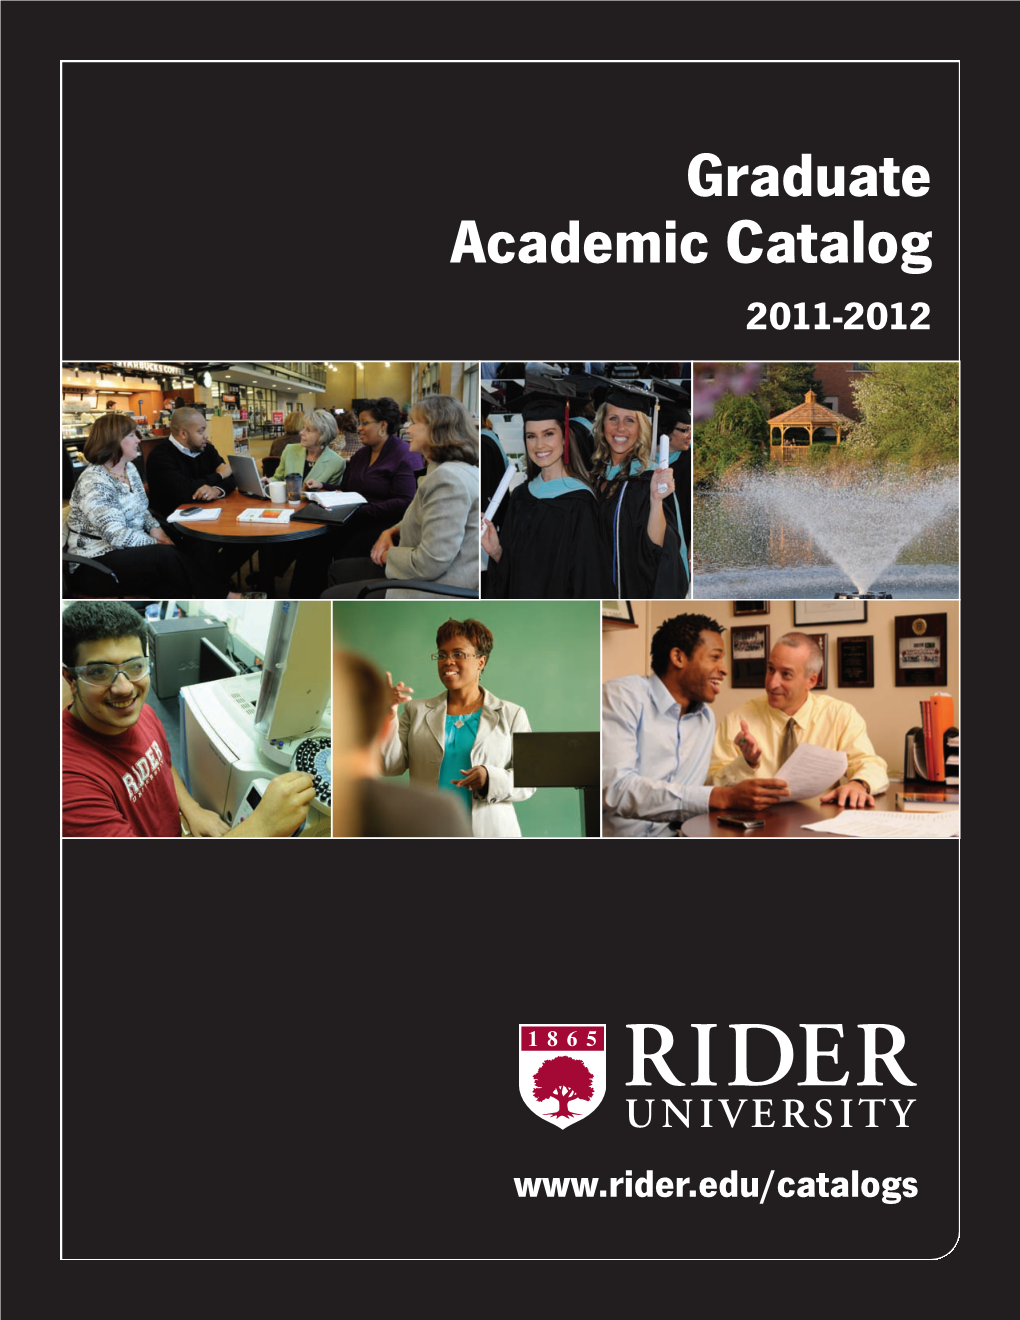 Graduate Academic Catalog 2011-2012